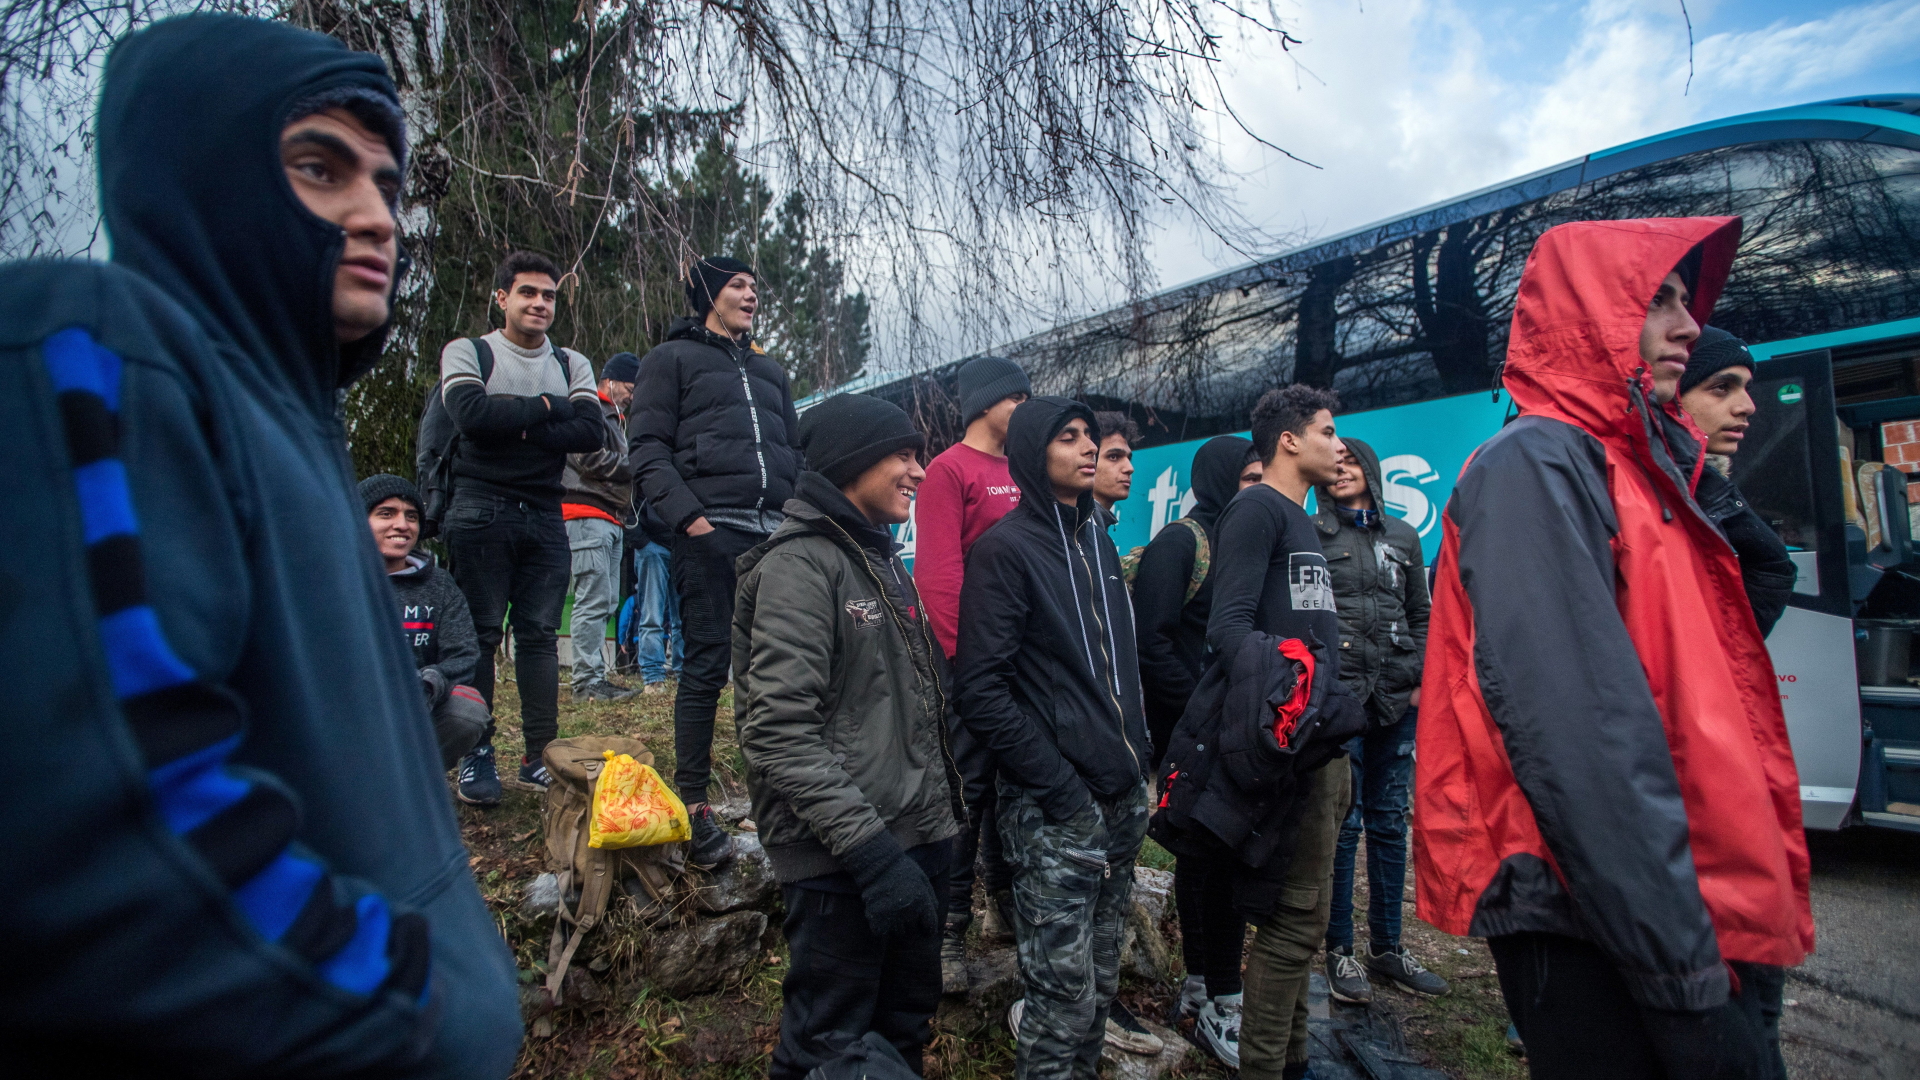 Flüchtlinge werden mit Bussen aus Vucjak abtransportiert | Bildquelle: Zoltan Balogh/EPA-EFE/REX